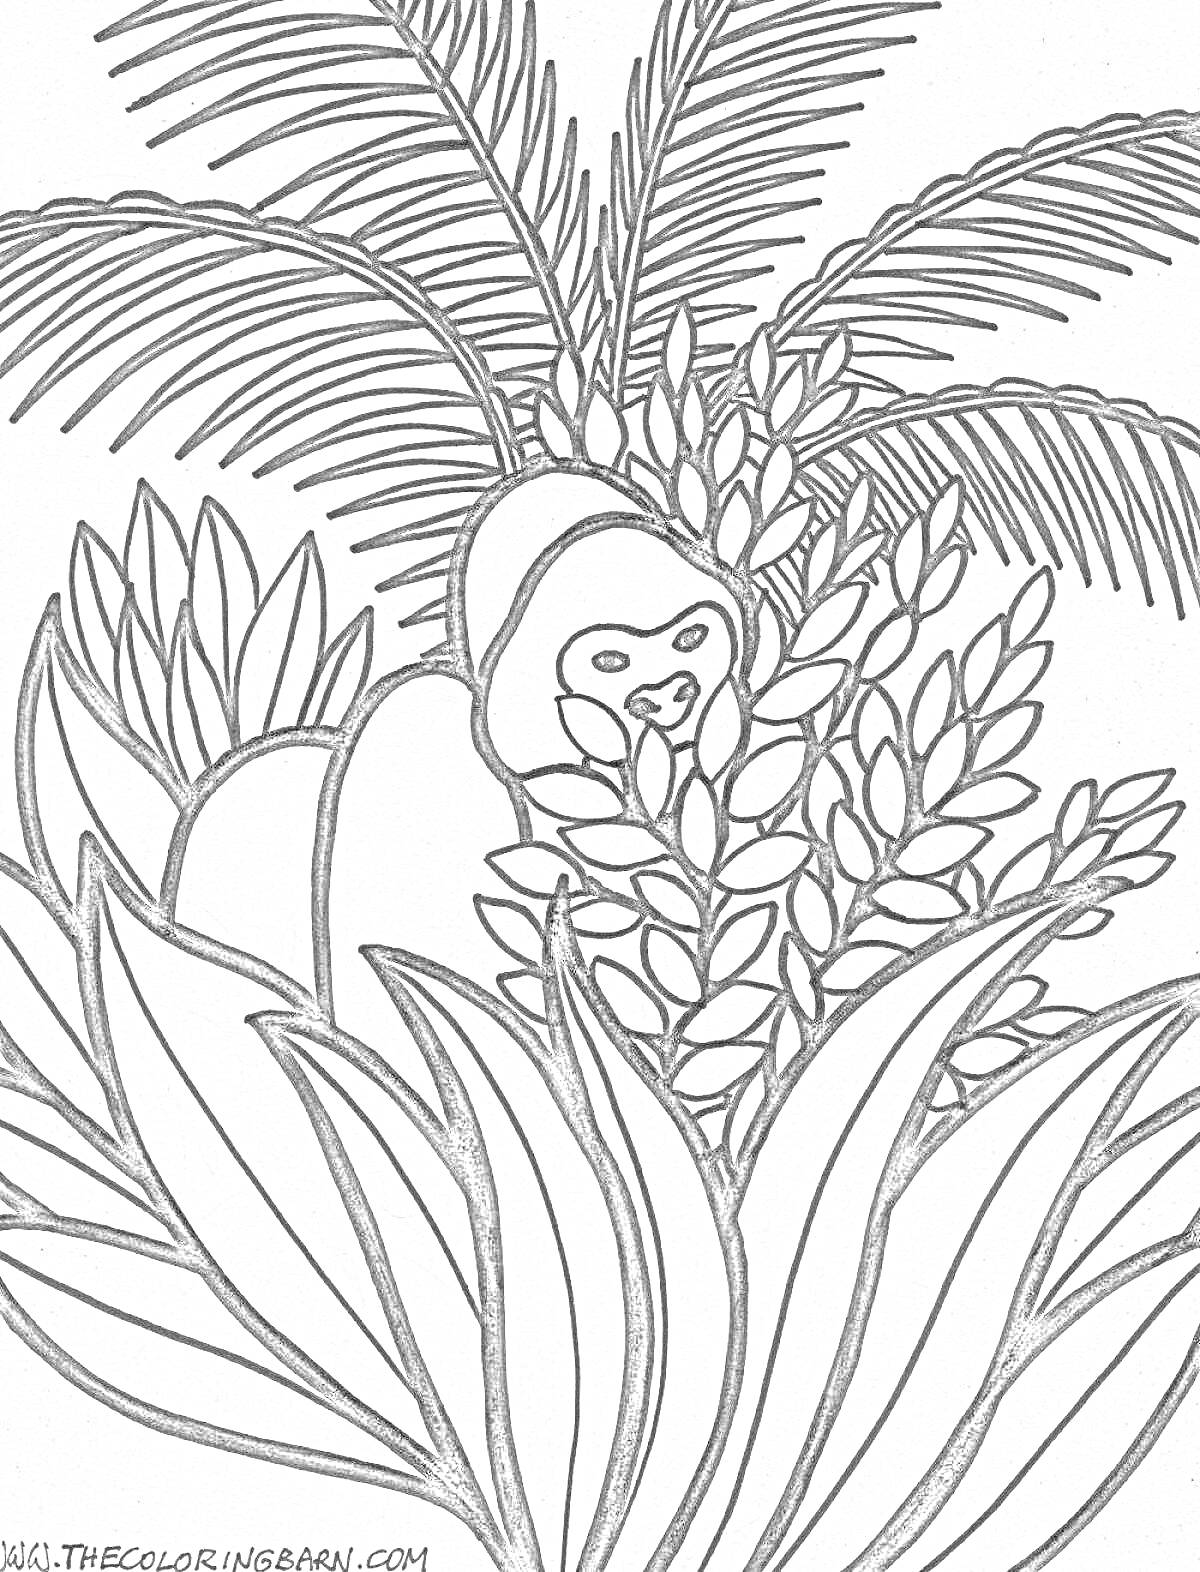 Раскраска Лесная сцена с гориллой, пальмами и кустами